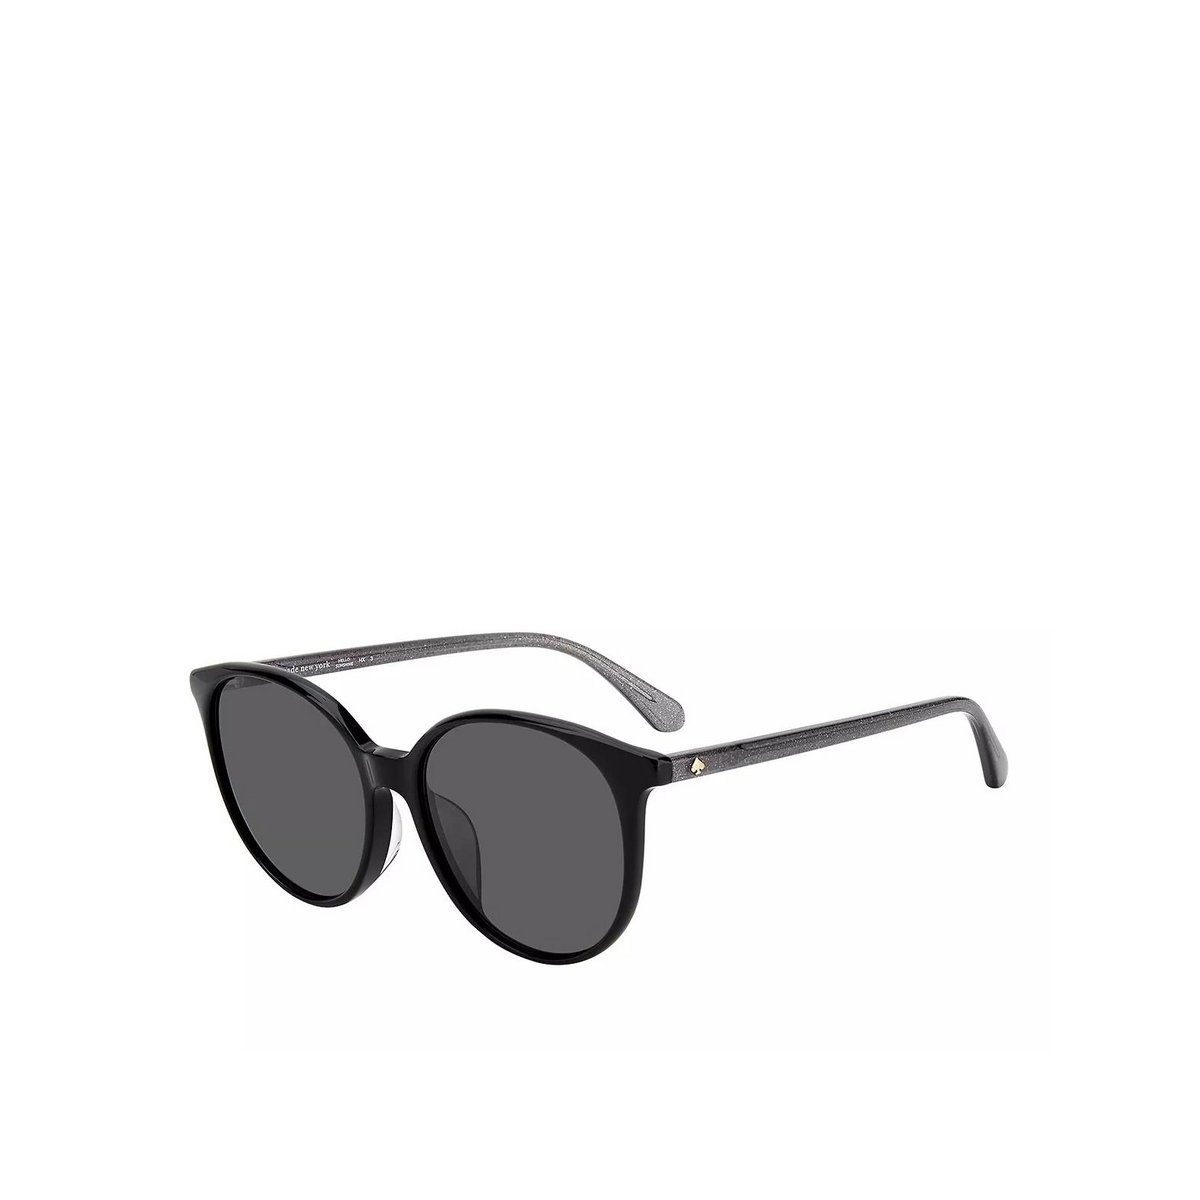 KATE SPADE NEW YORK Sonnenbrille schwarz (1-St)